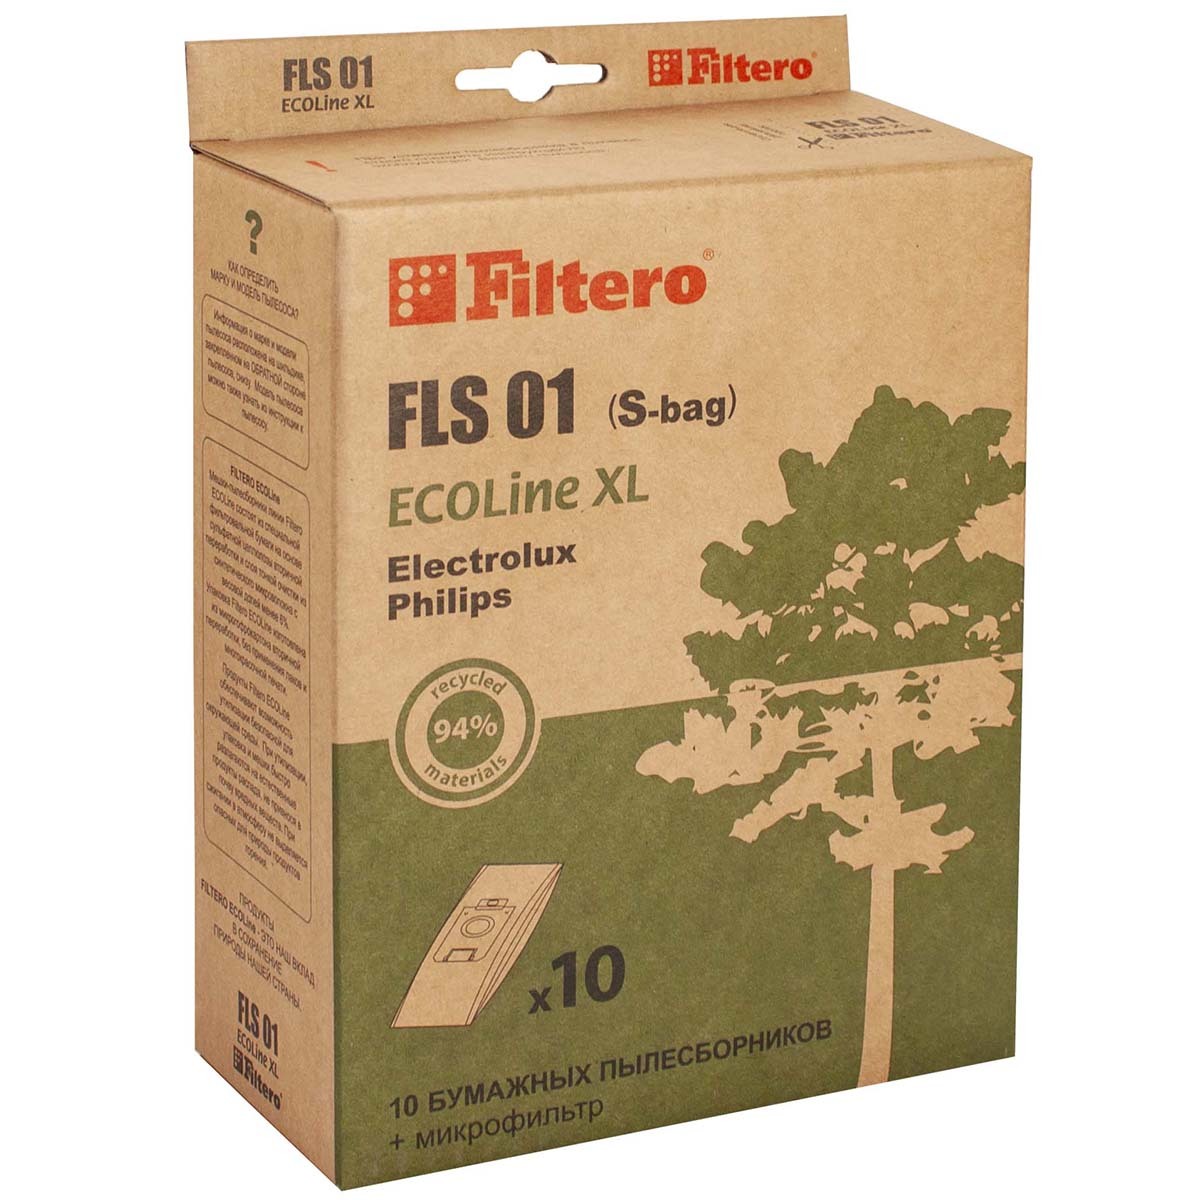 пылесборники filtero fls 01 s bag 4 Пылесборники Filtero FLS 01 (S-bag) (10+) XL ECOLine